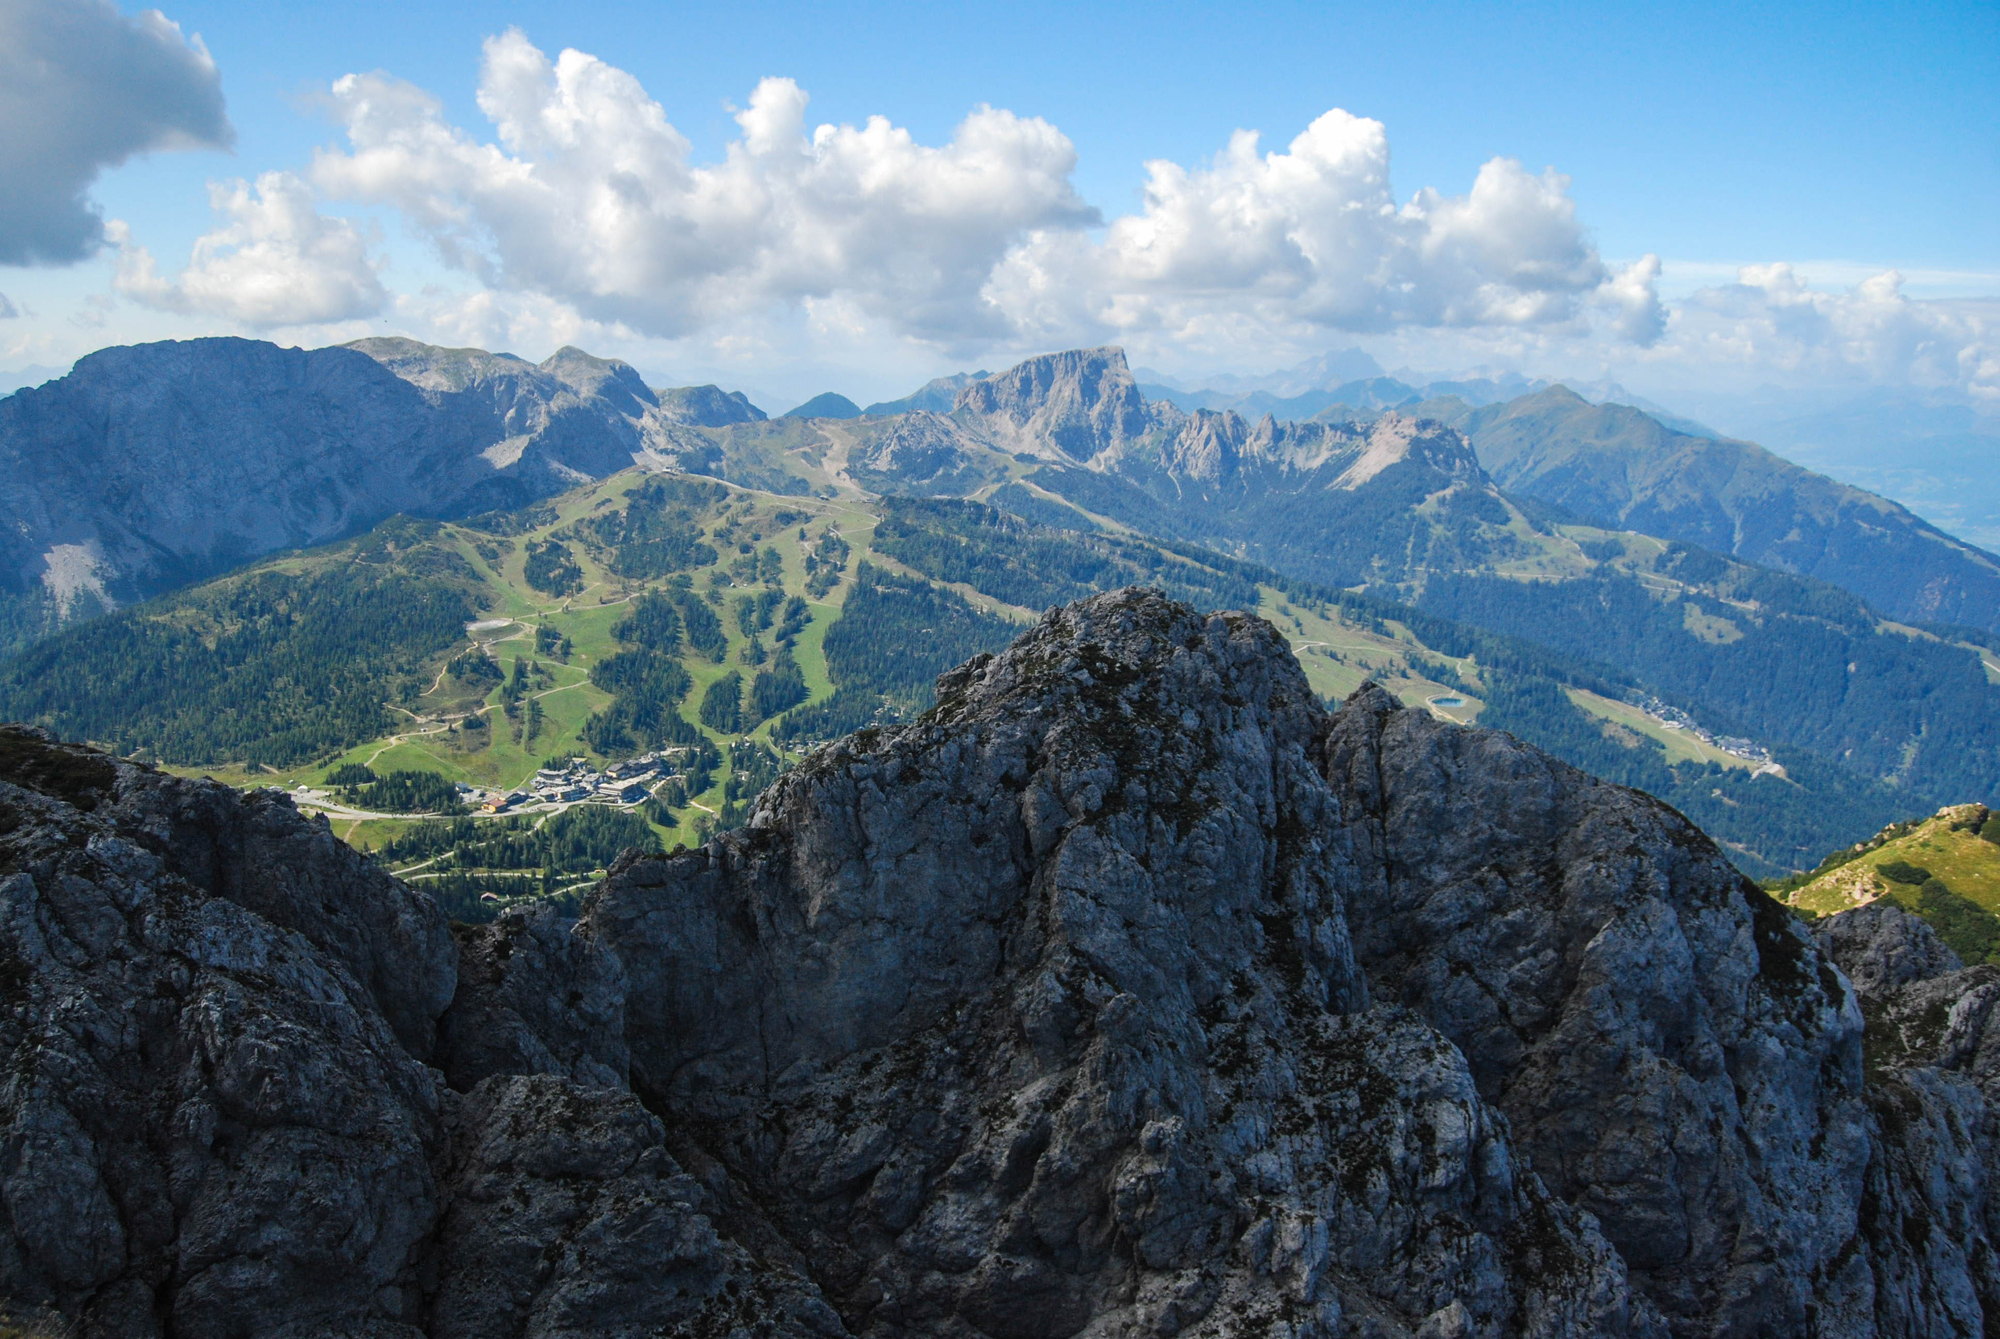 Pohľad z vrcholu na západ, vpravo Monte Cavallo / Rosskofel (2239 m), v strede Trogkofel (2280 m)